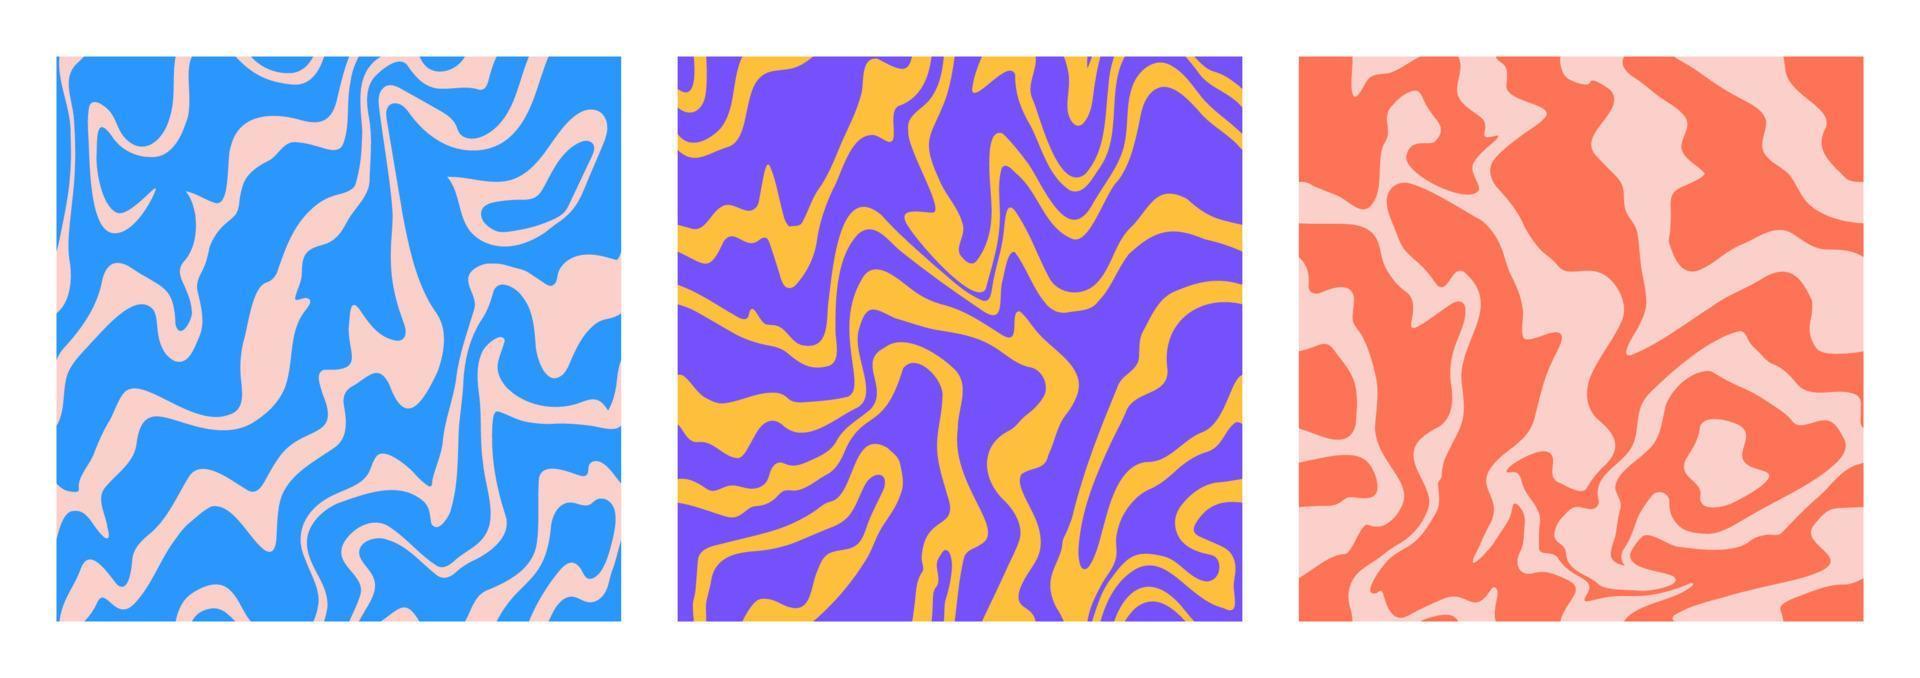 1970 retro häftig vågor sömlös mönster. virvla runt psychedelic trippy texturer uppsättning. estetisk elektrisk inspirerad remsor. strömmande liqiud fantasi marmor bakgrund. vektor illustration.